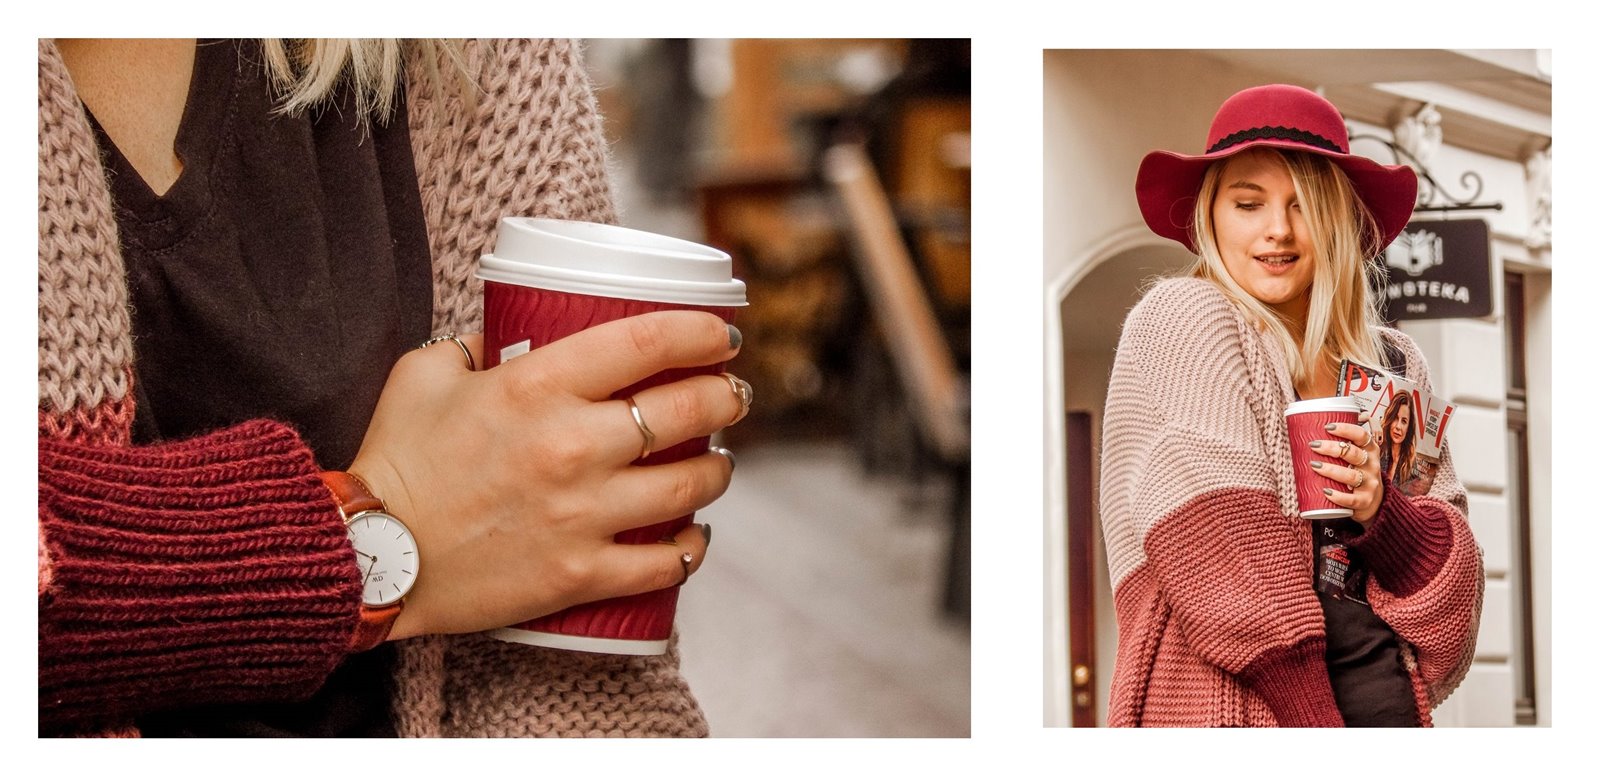 6a detale zegarek daniel wellington złote pierścionki pomysł na stylizacje prezent modnapolka łódź outfit jak nosić swetry owersize kolorowe ubrania na jesień co jest modne jesień zima 2018 blondynka kolory włosy